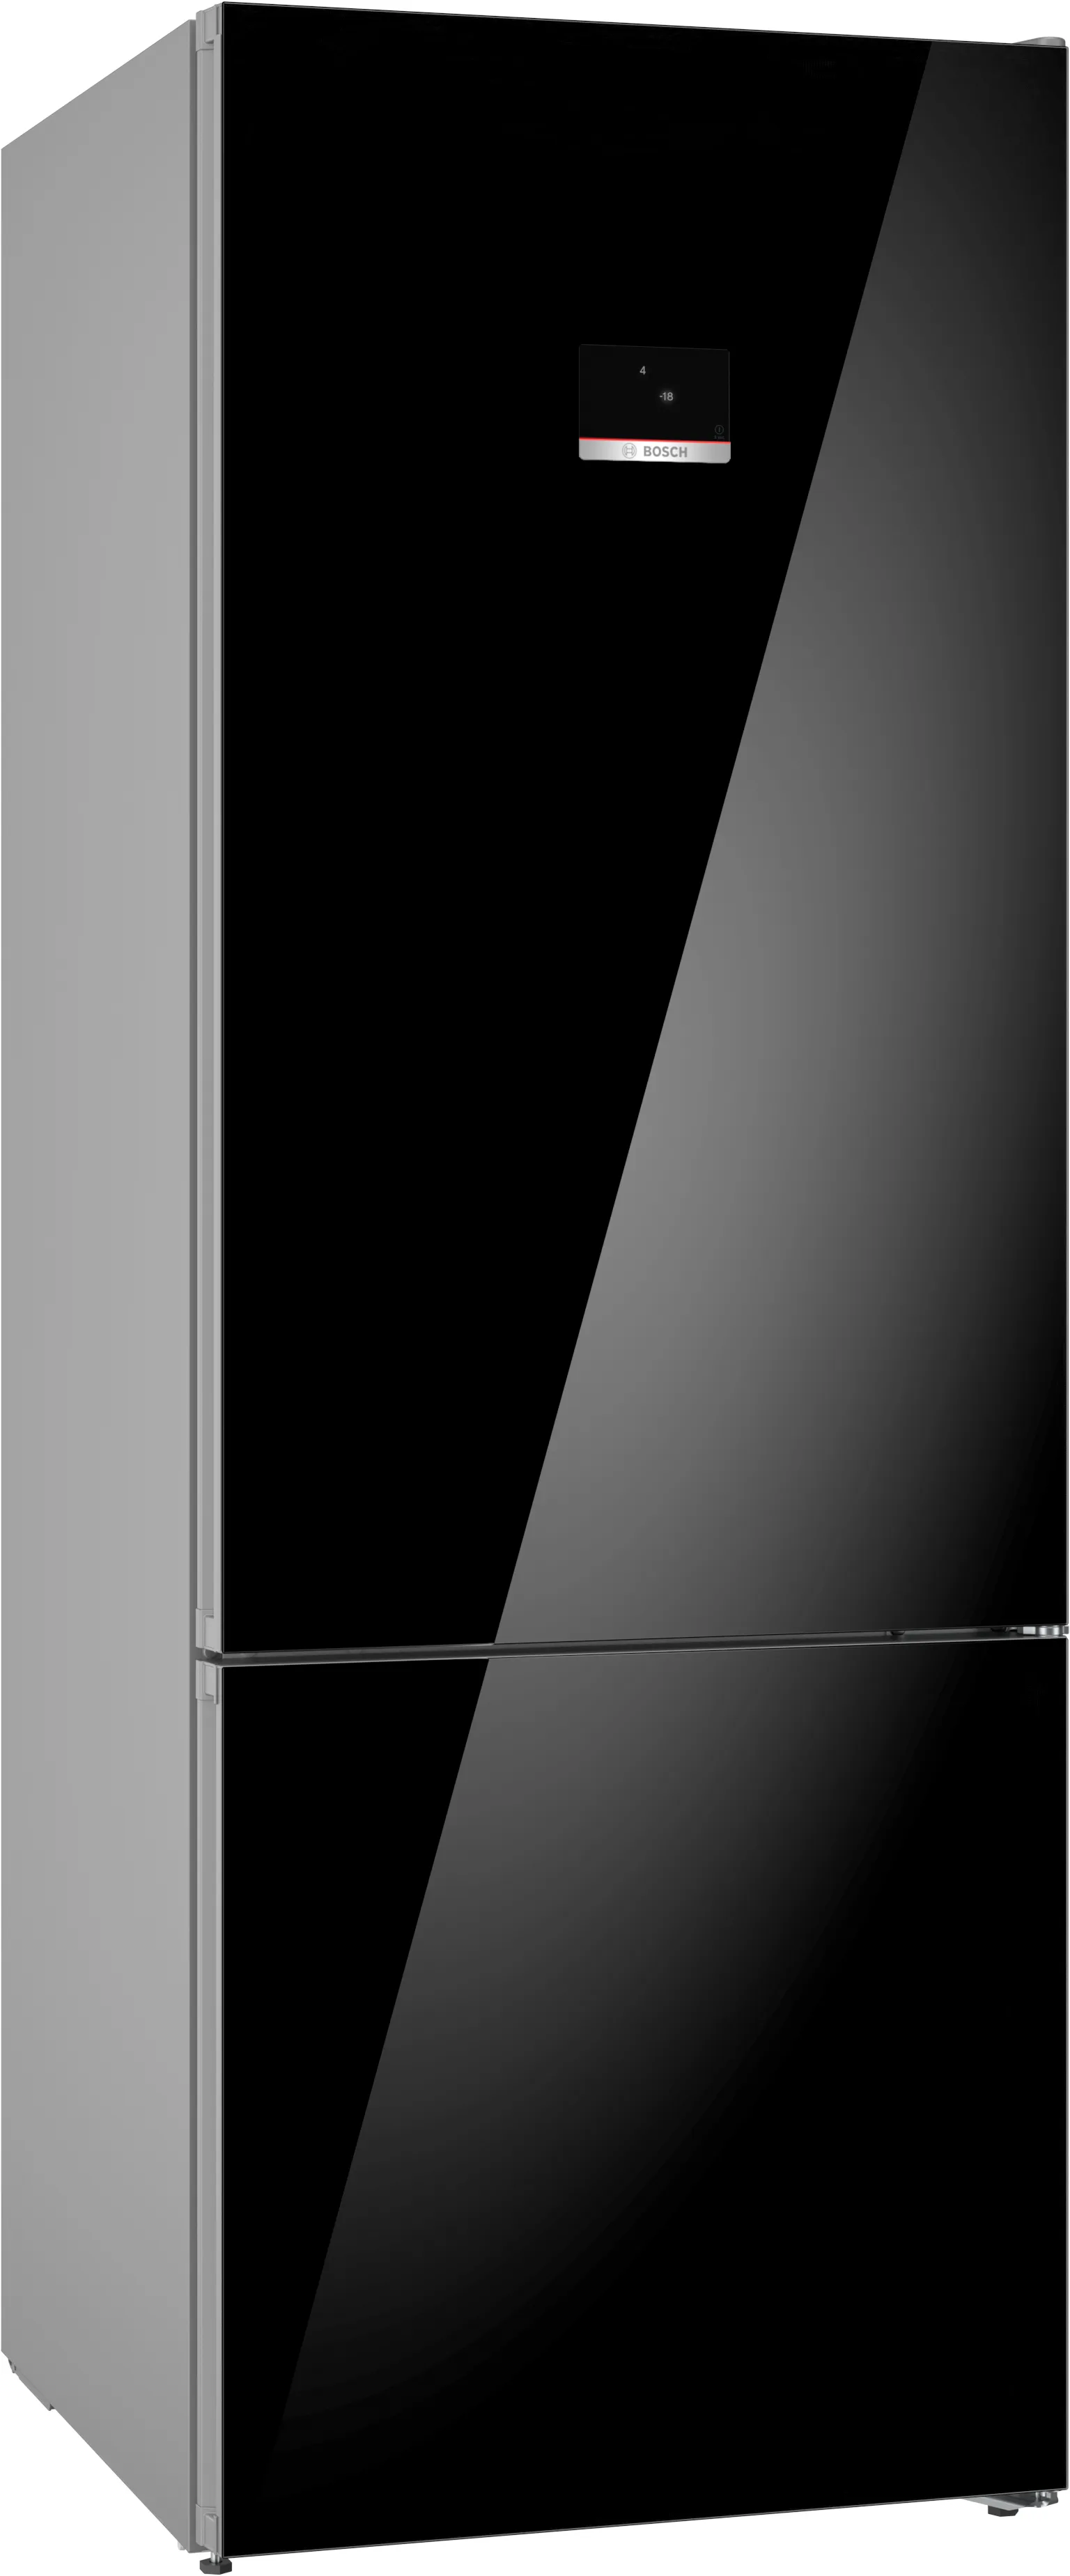 Серия 6 Отдельностоящий холодильник с нижней морозильной камерой 193 x 70 cm Чёрный 